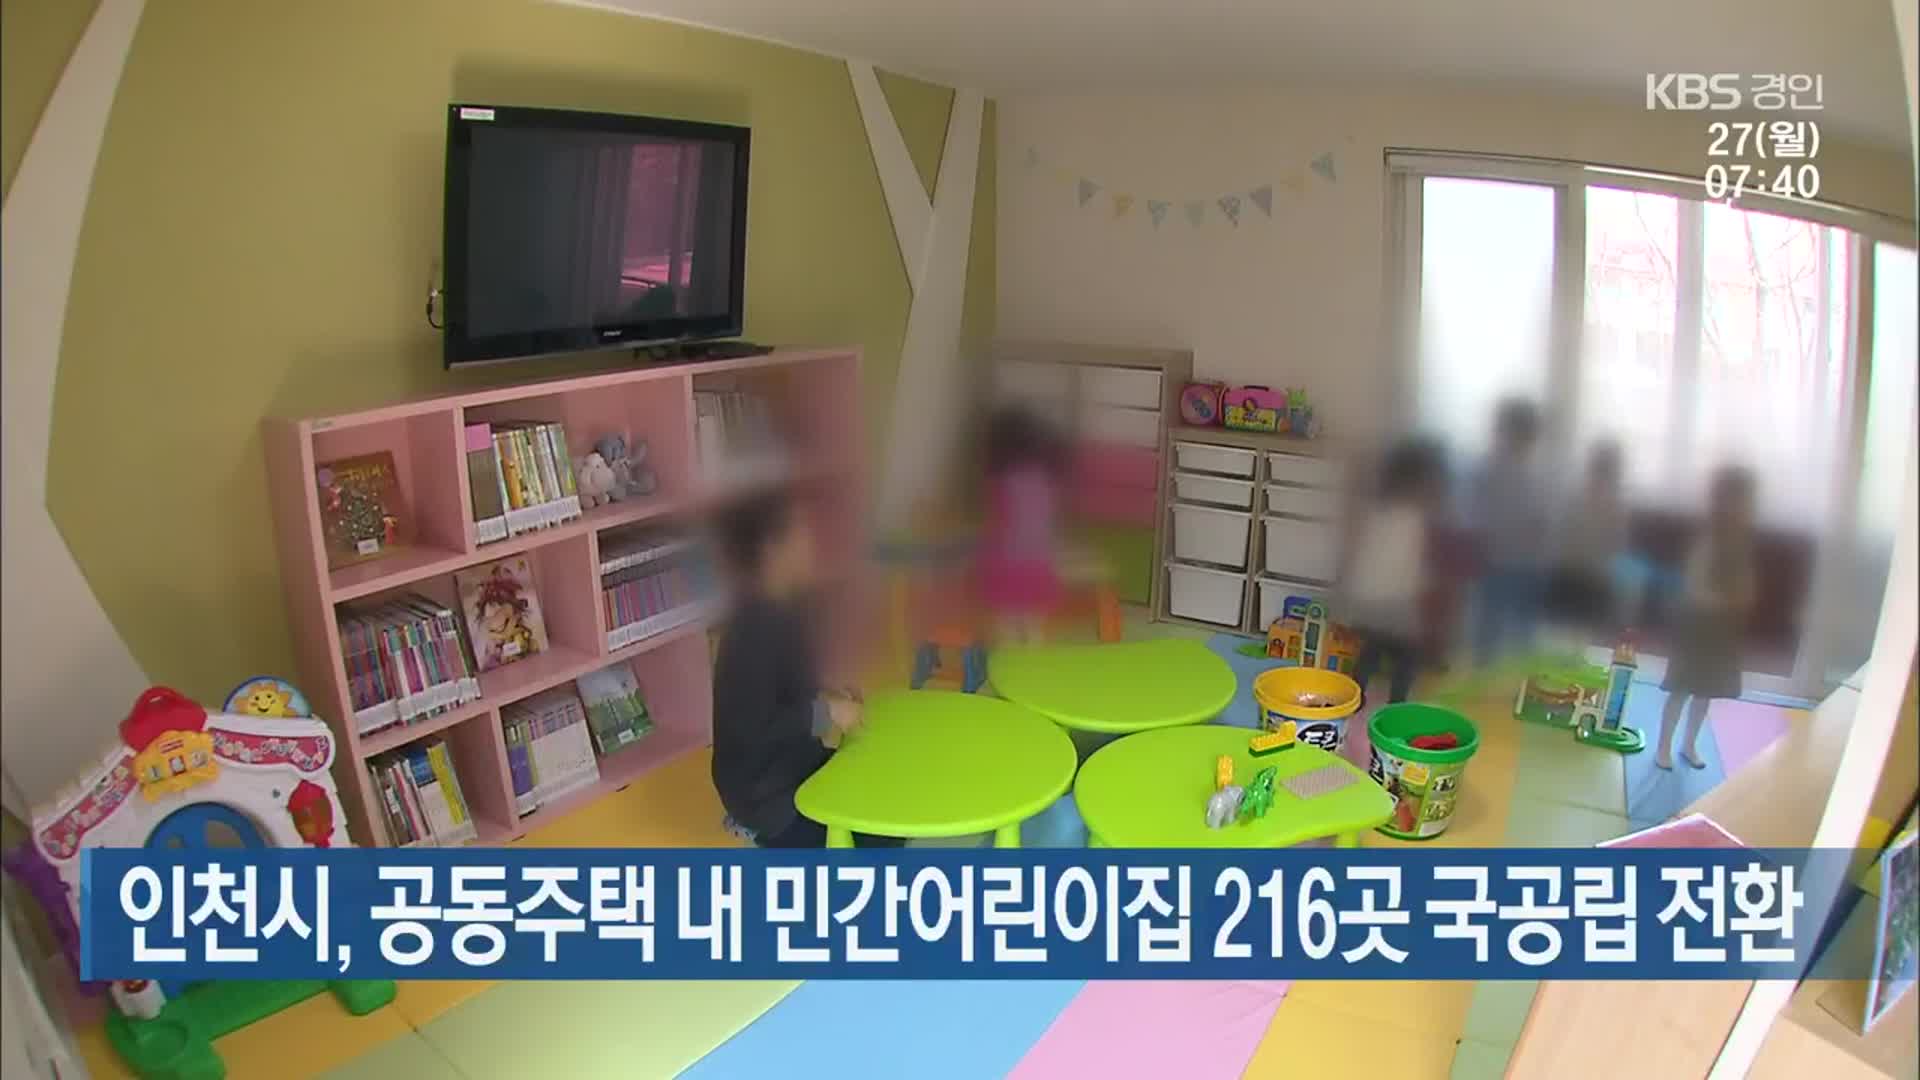 인천시, 공동주택 내 민간어린이집 216곳 국공립 전환